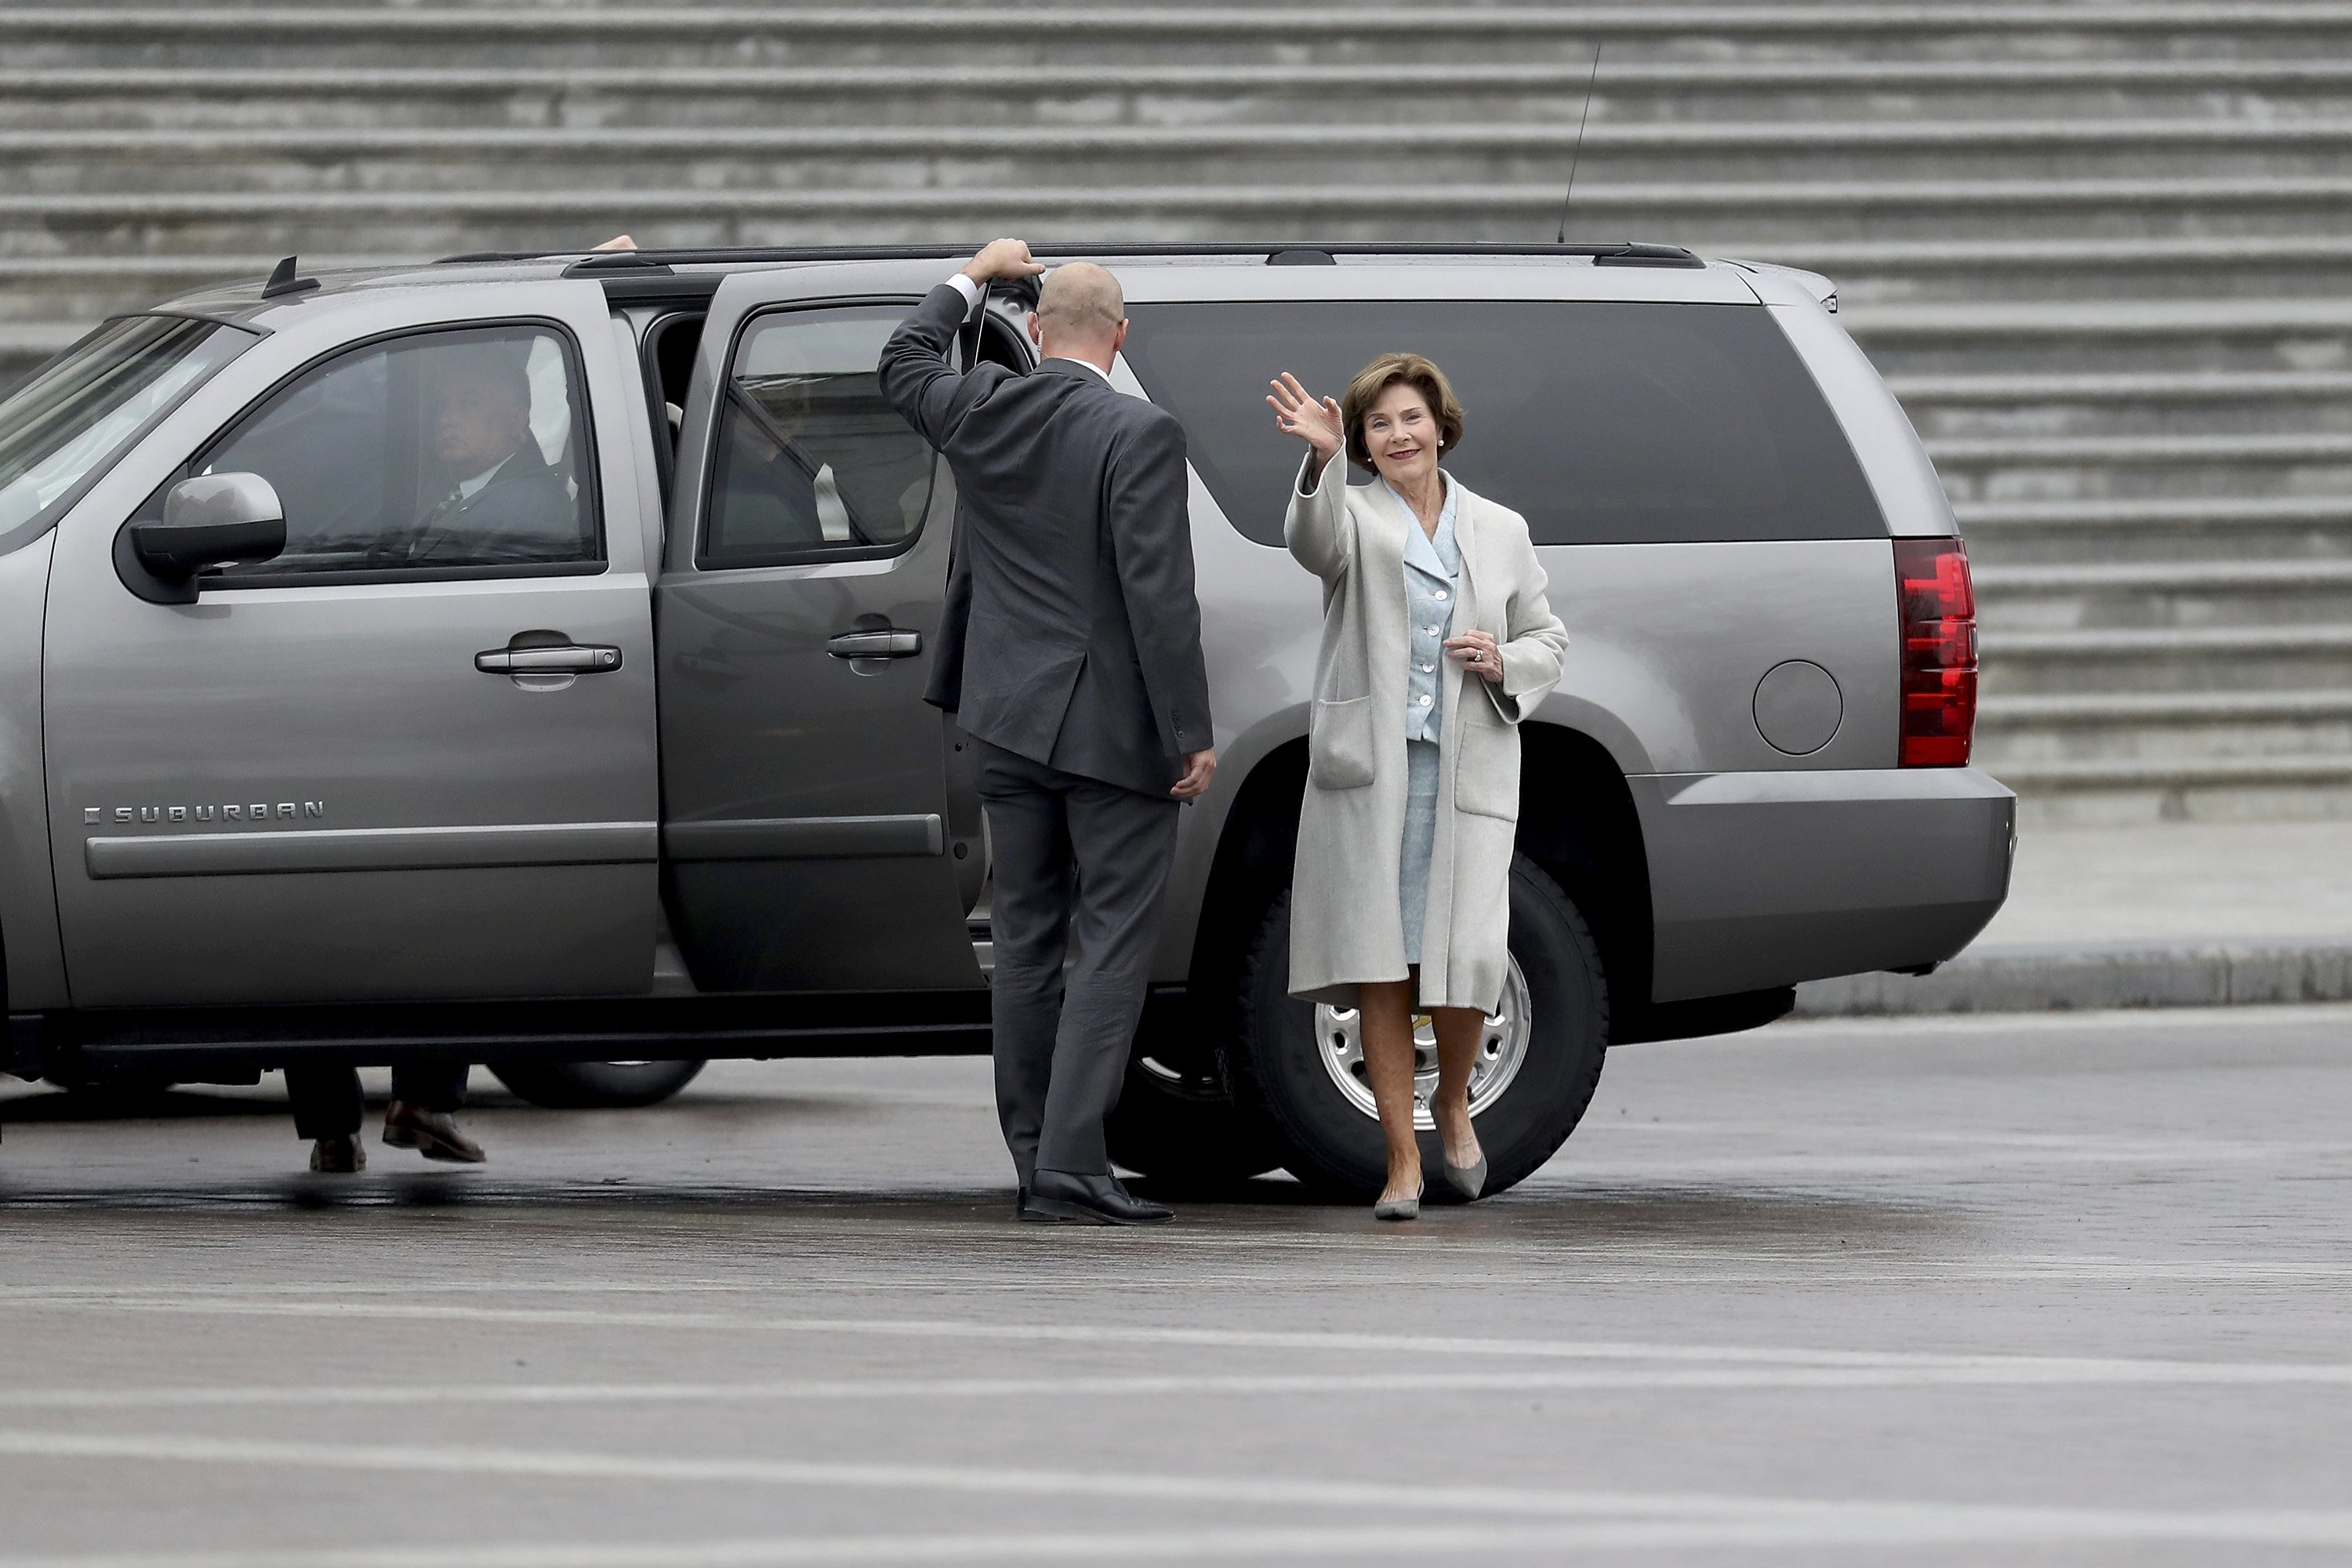 لورا بوش زوجة الرئيس الأمريكى الأسبق تلوح بيدها للكاميرات